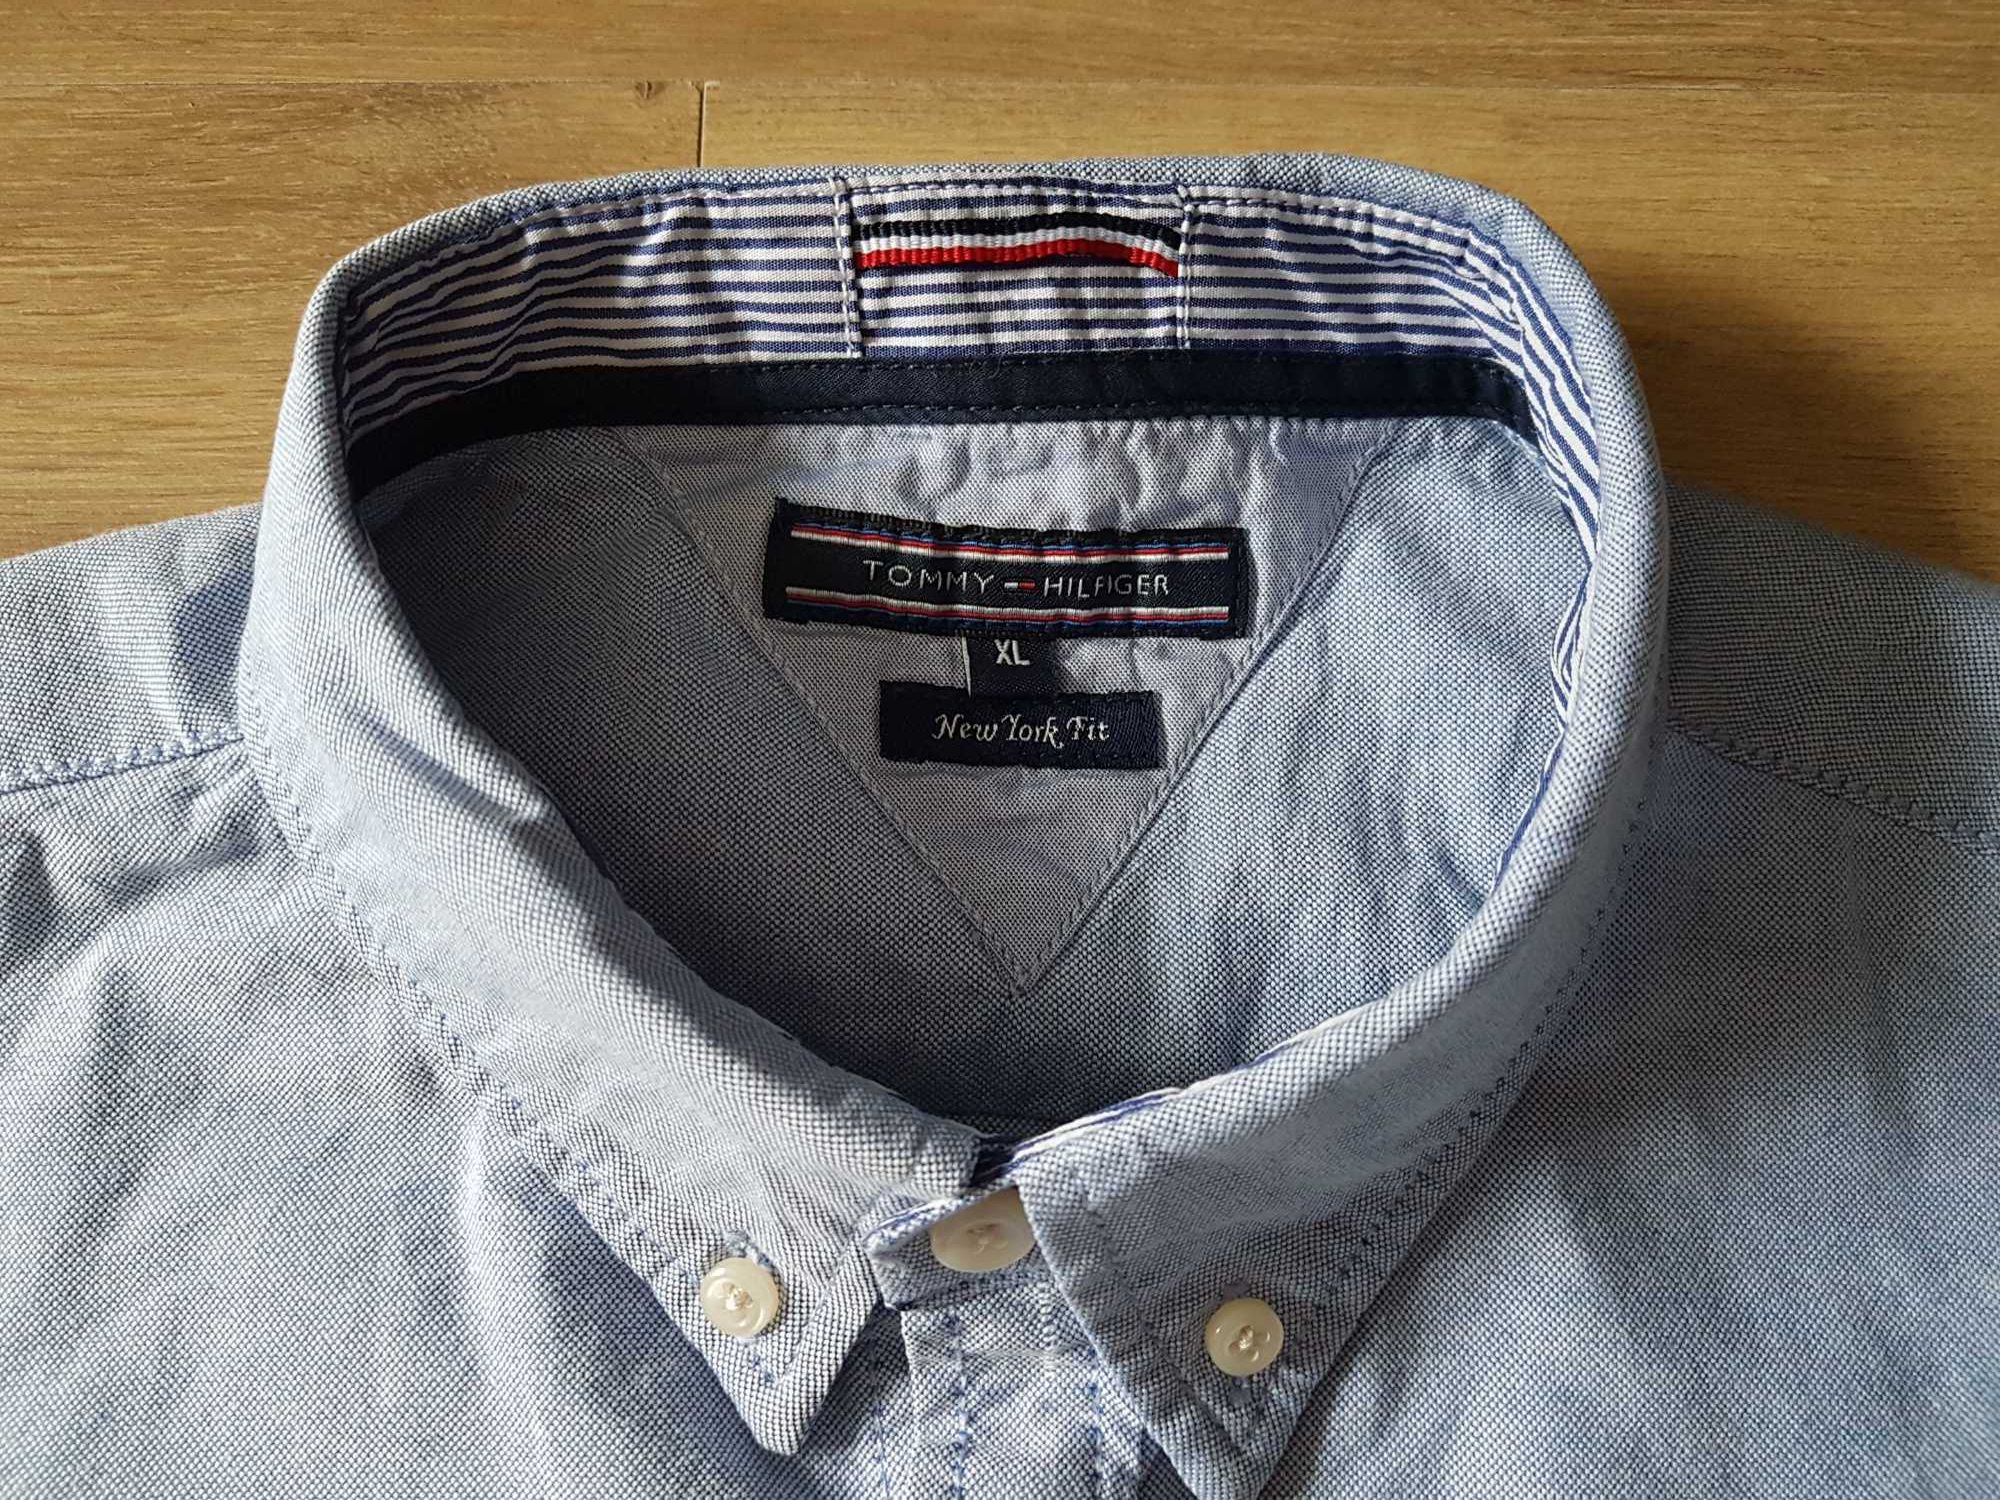 Nowa koszula Tommy Hilfiger New York Fit roz XL niebieska 100% bawełna